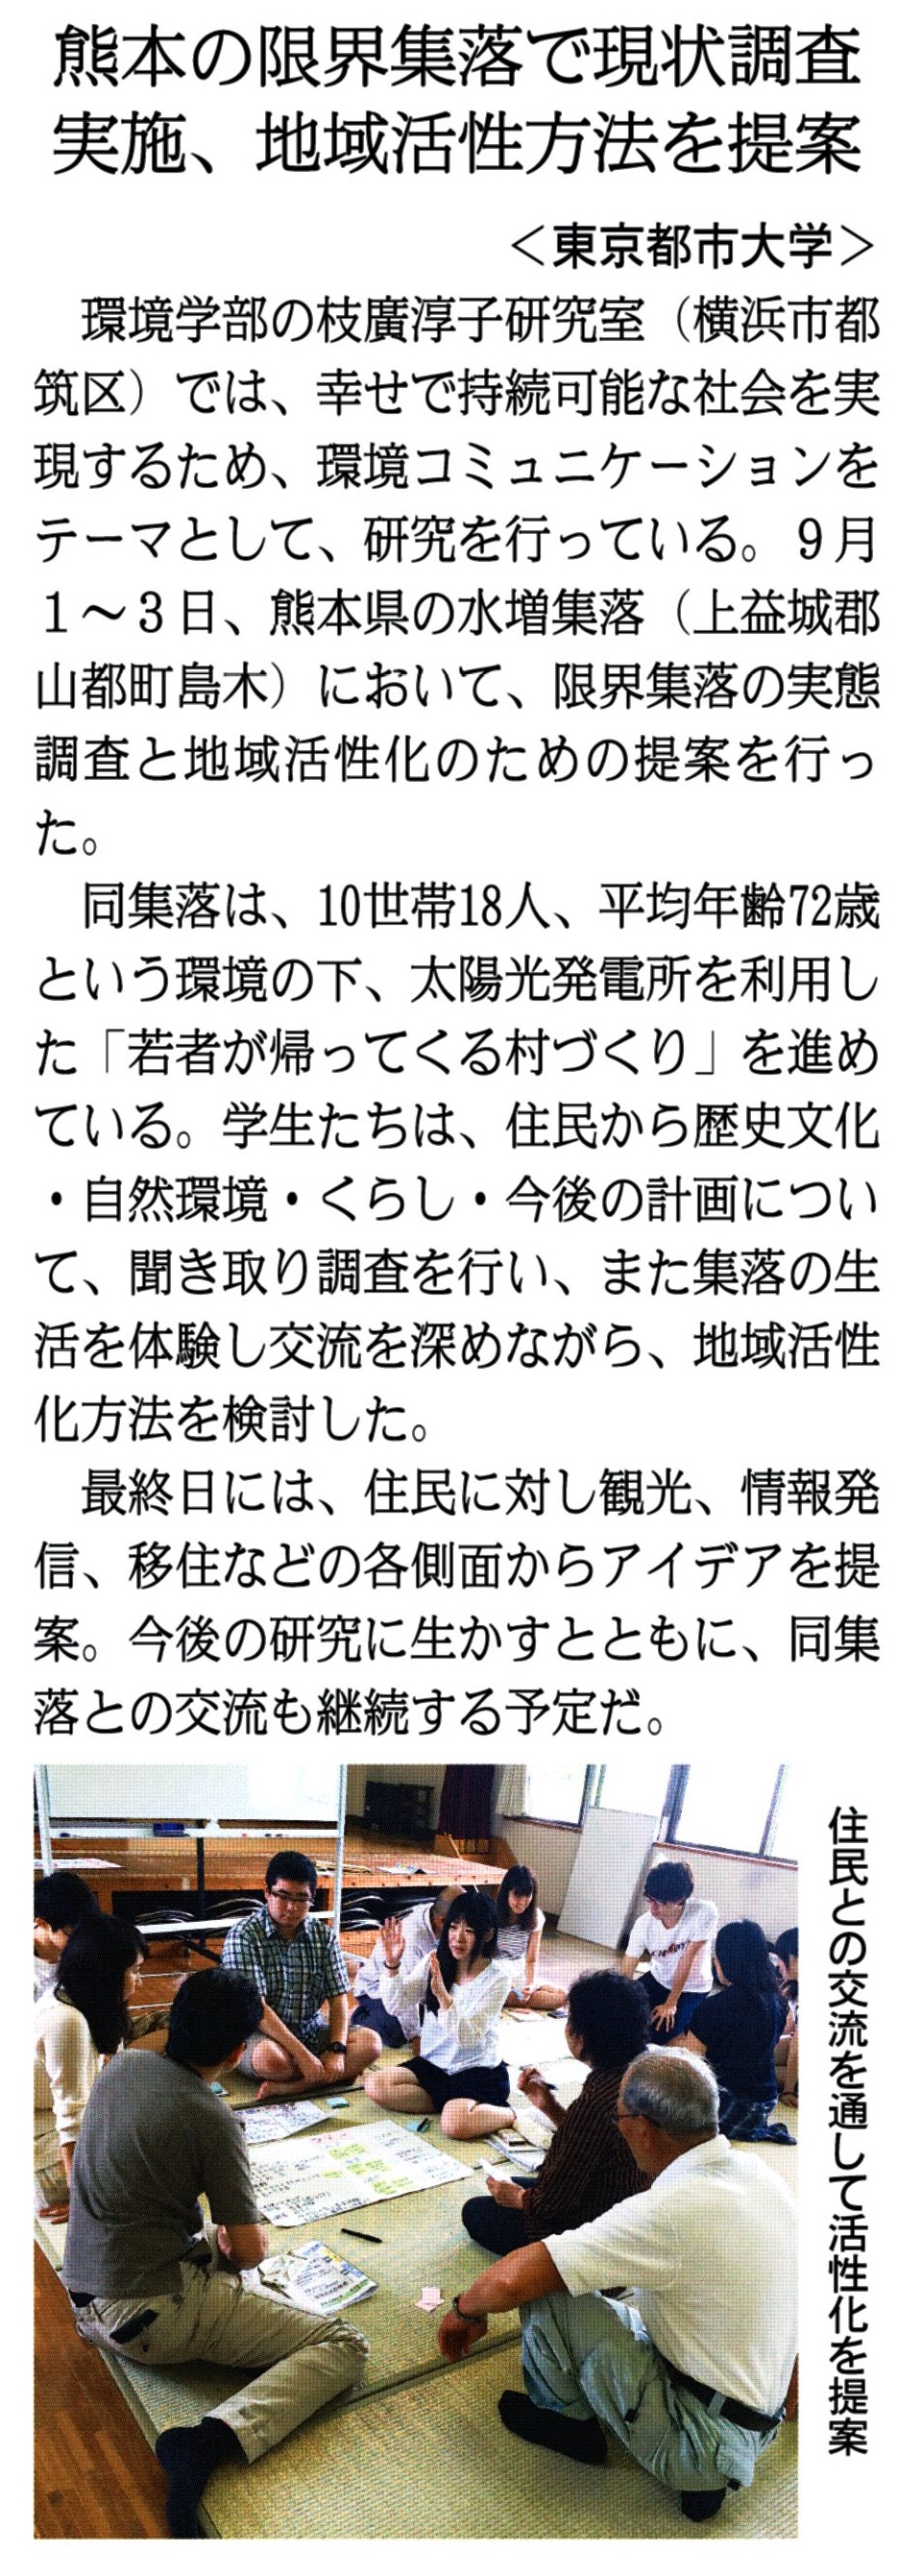 20151007_fujisankeibusinessai.jpg